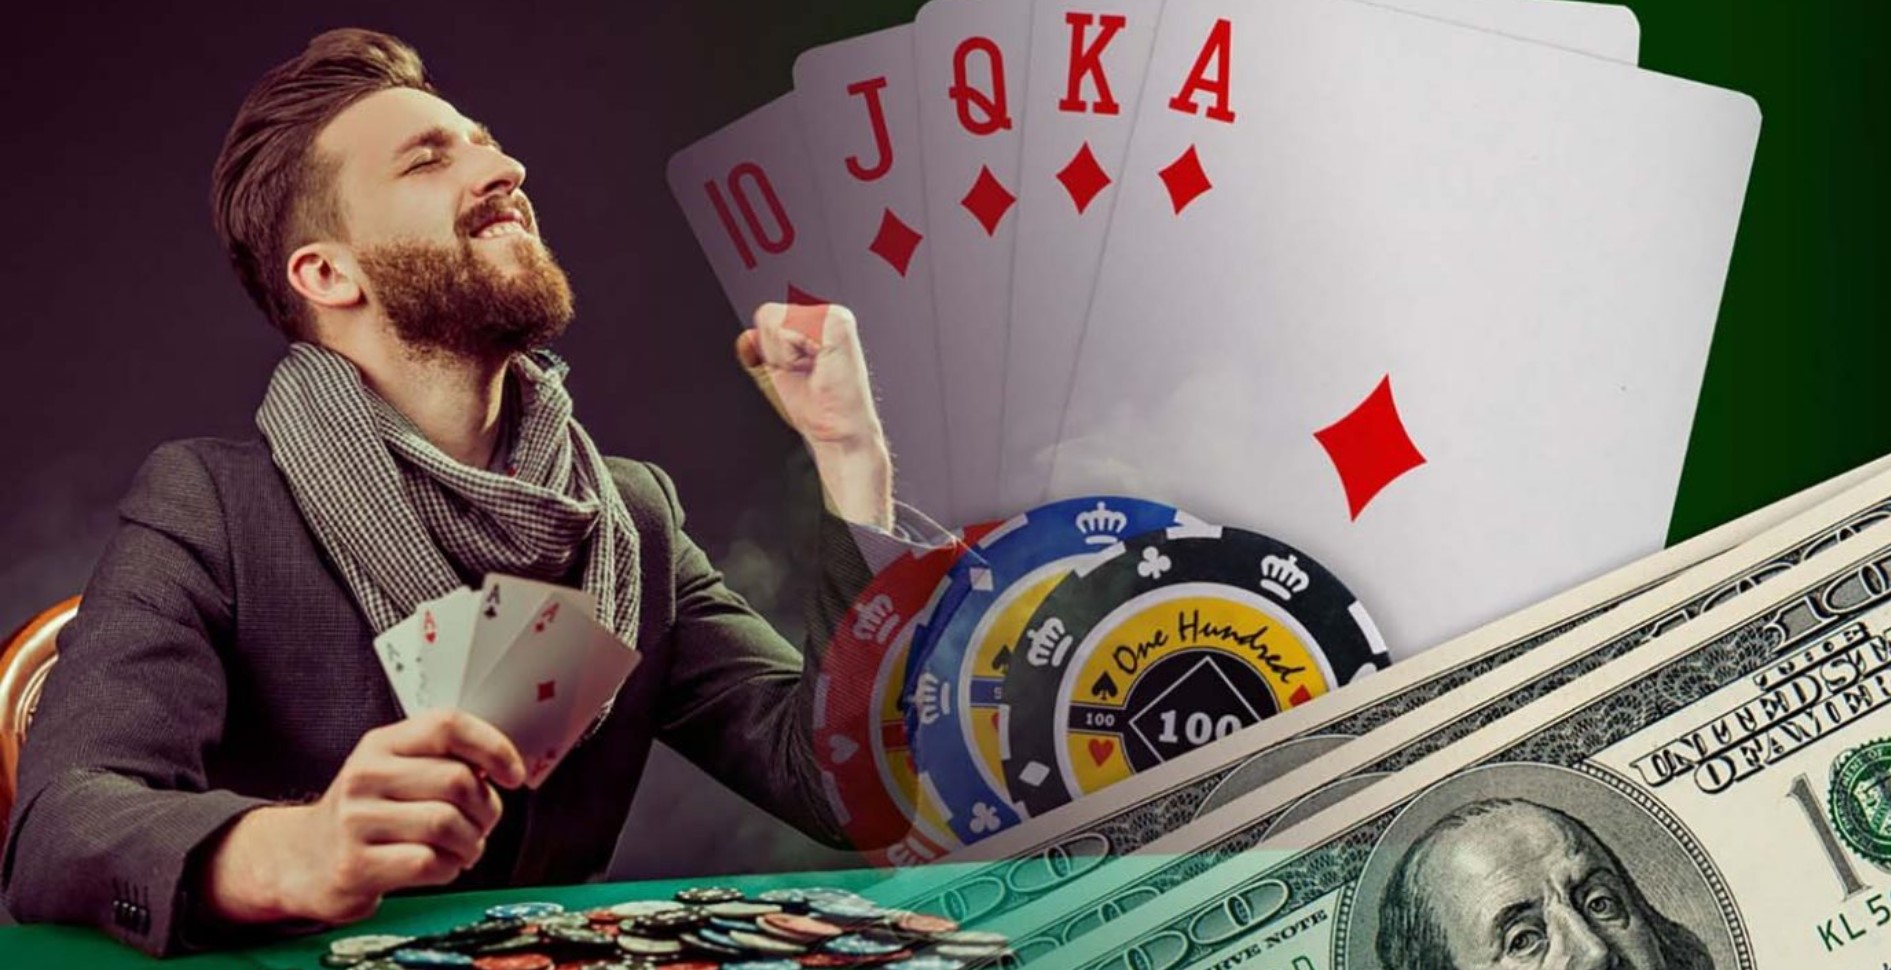 Https money x11 casino. Покер. Фишки и деньги Покер. Казино Покер. Победа в покере.